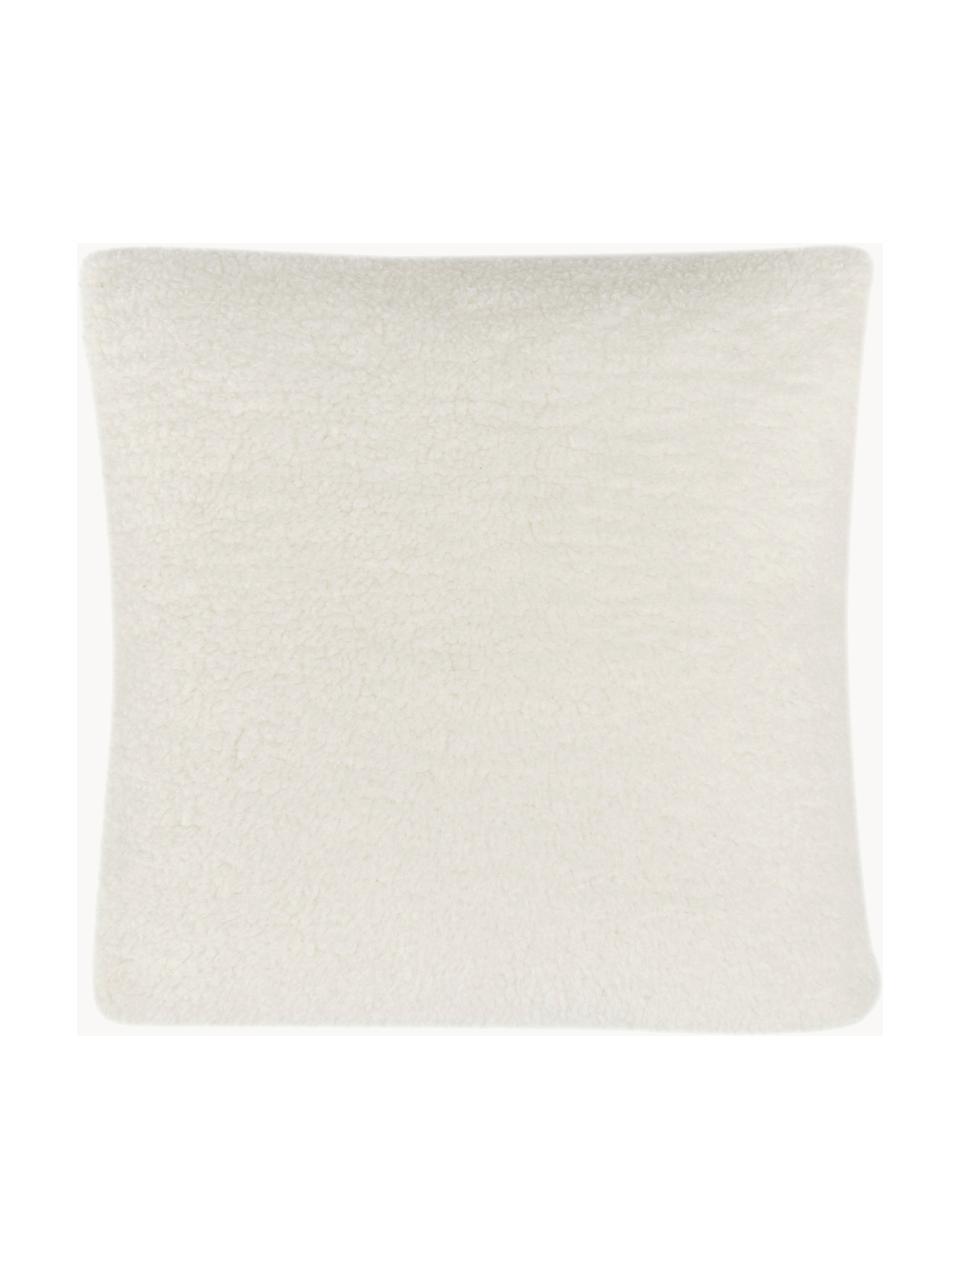 Housse de coussin 45x45 peluche Cozy, 100 % polyester (tissu peluche)

Le matériau est certifié STANDARD 100 OEKO-TEX®, SH025 134875, Blanc crème, beige, larg. 45 x long. 45 cm